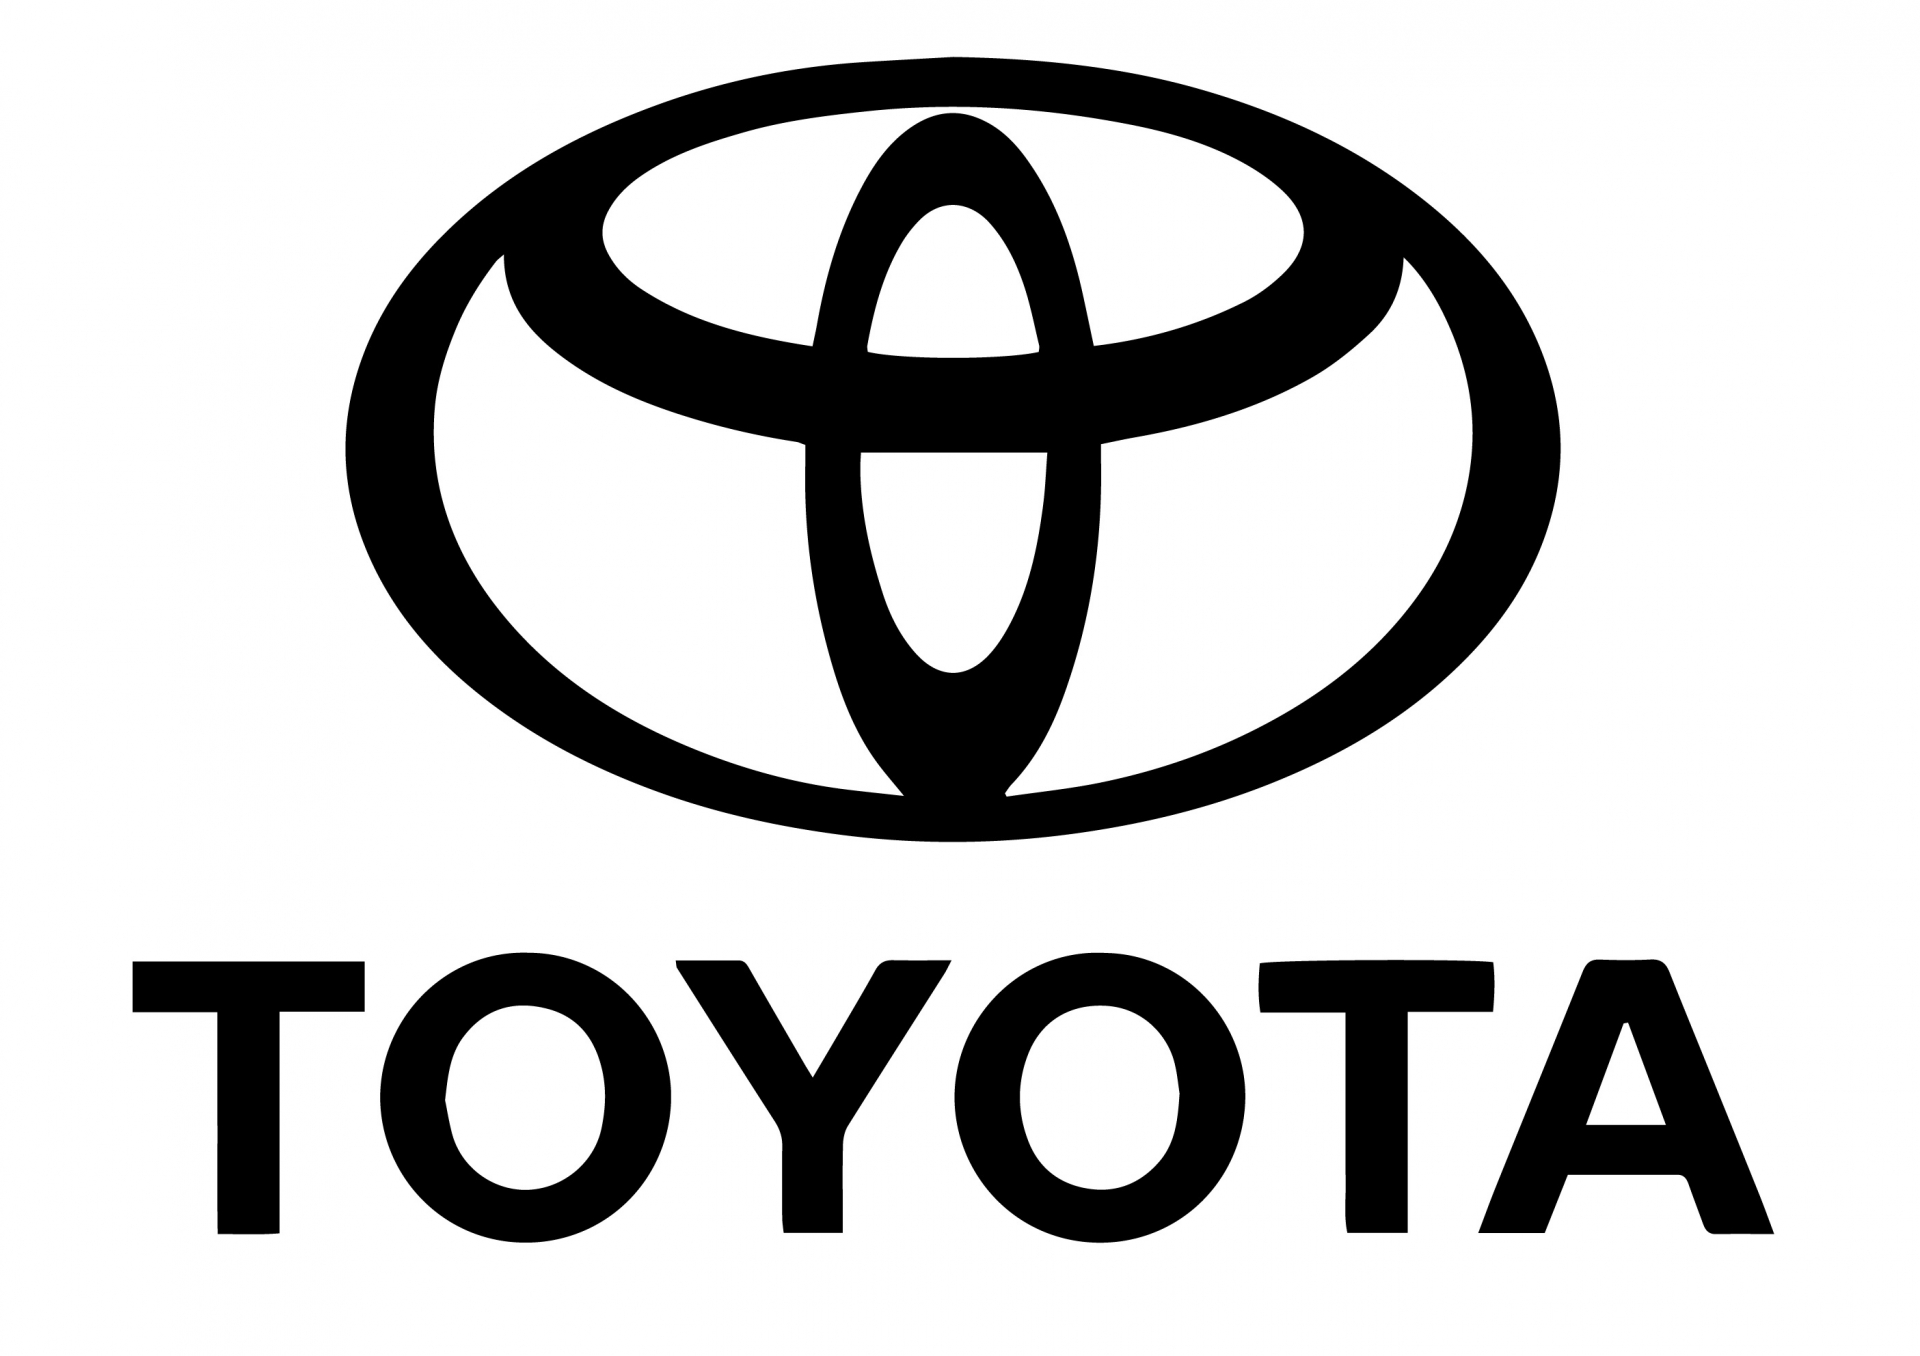 Toyota - Toyota Bắc Ninh đơn vị kinh doanh xe Toyota chính hãng